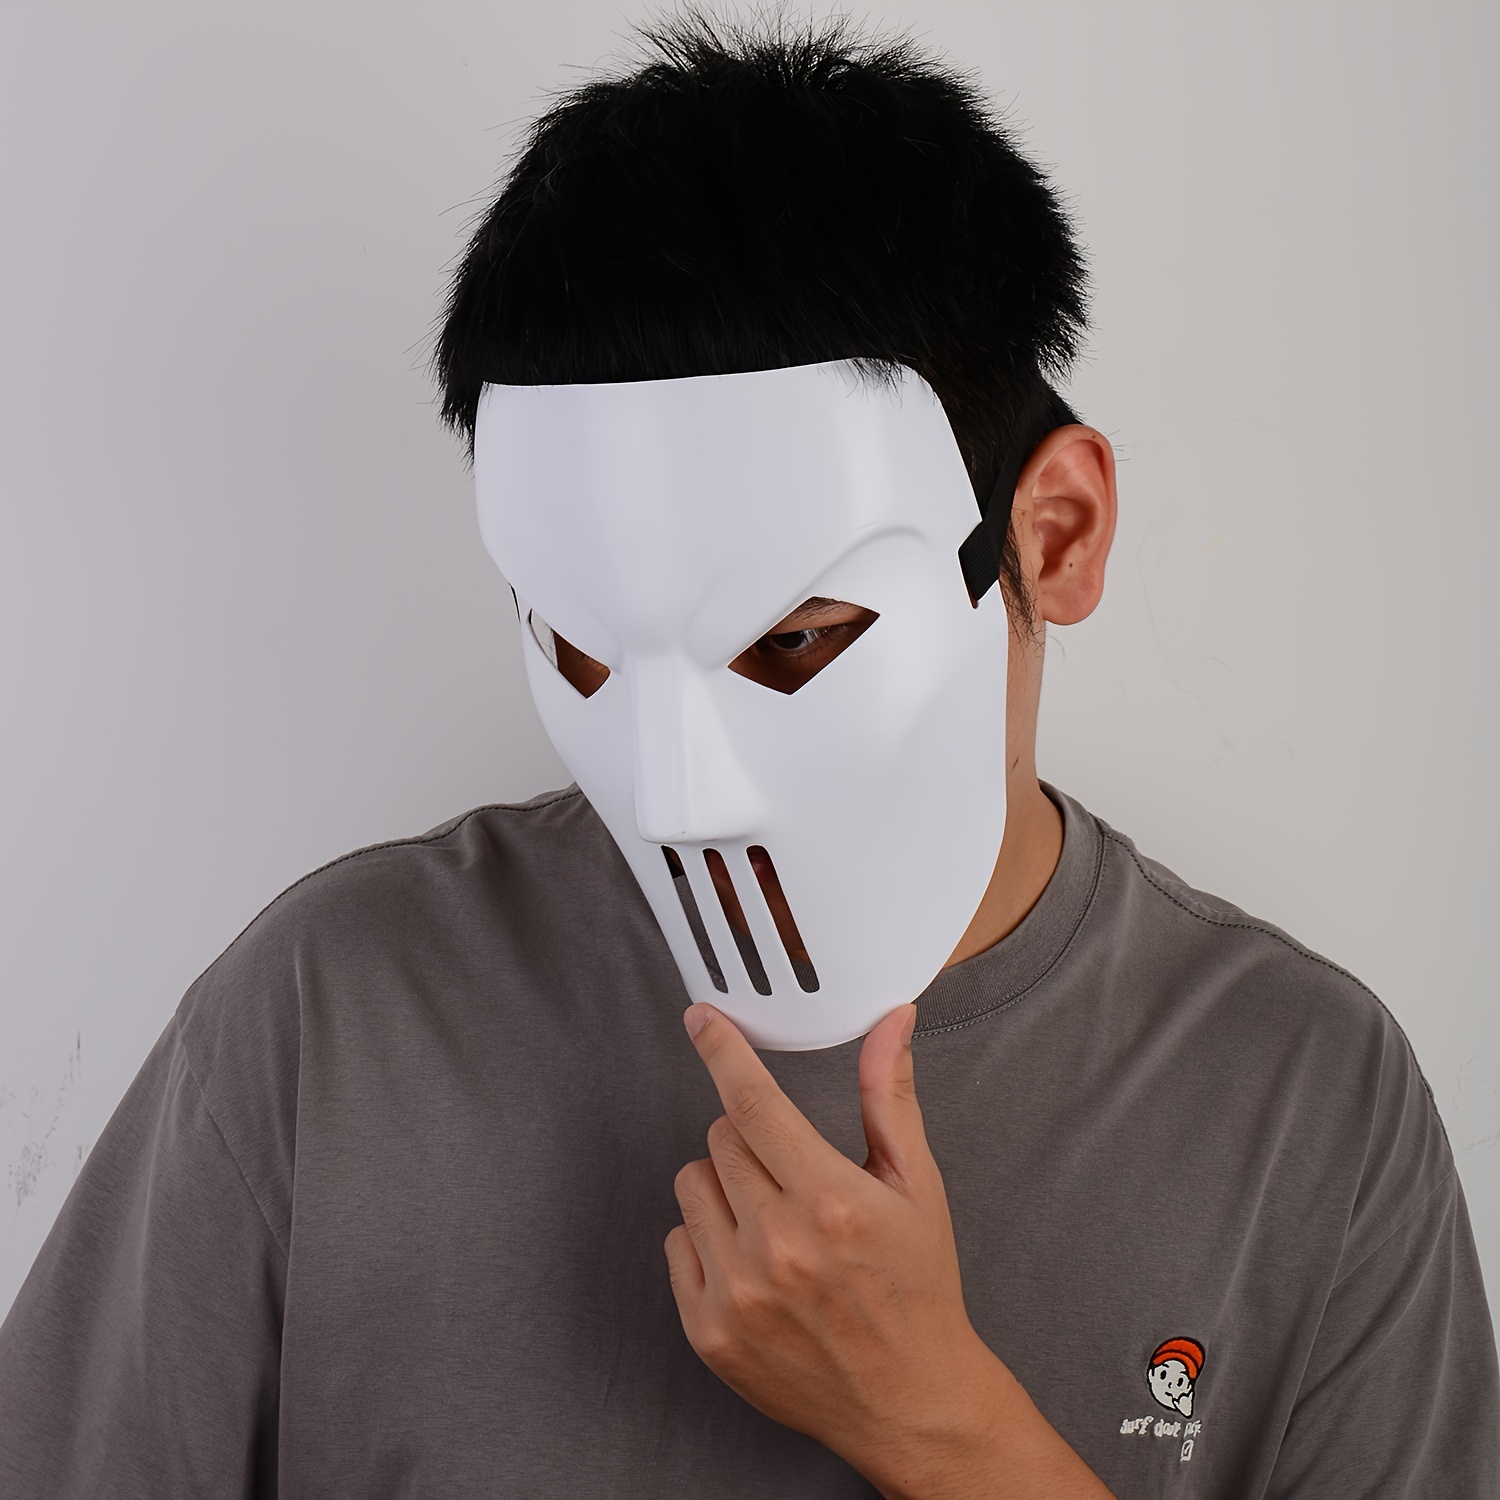 Plain white mask of The Joker